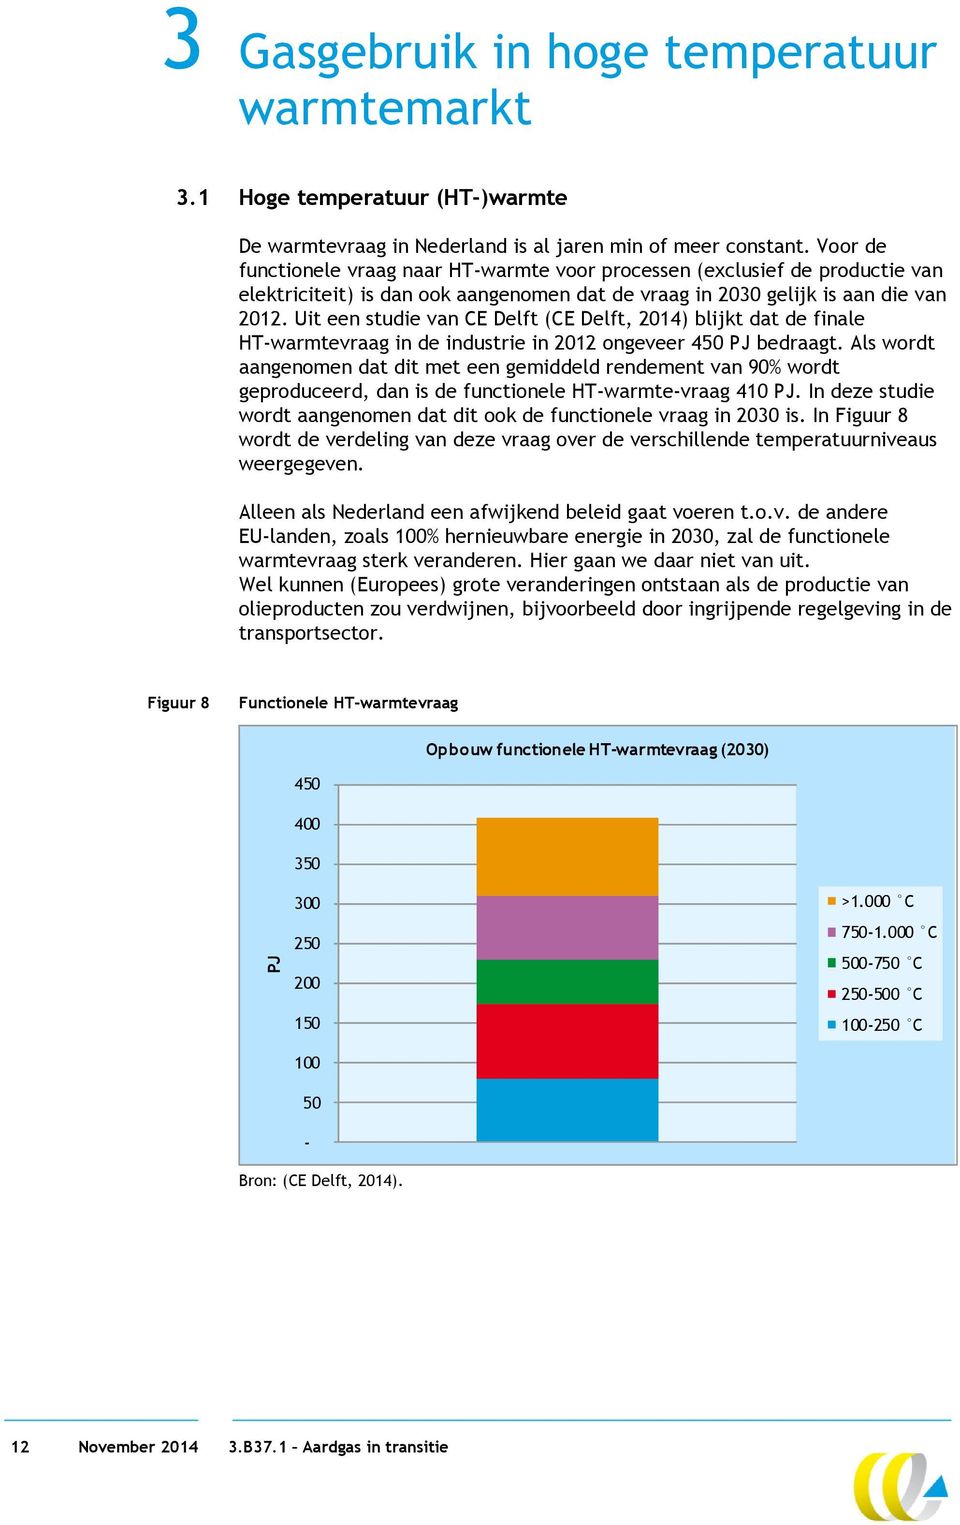 Uit een studie van CE Delft (CE Delft, 2014) blijkt dat de finale HT-warmtevraag in de industrie in 2012 ongeveer 450 PJ bedraagt.